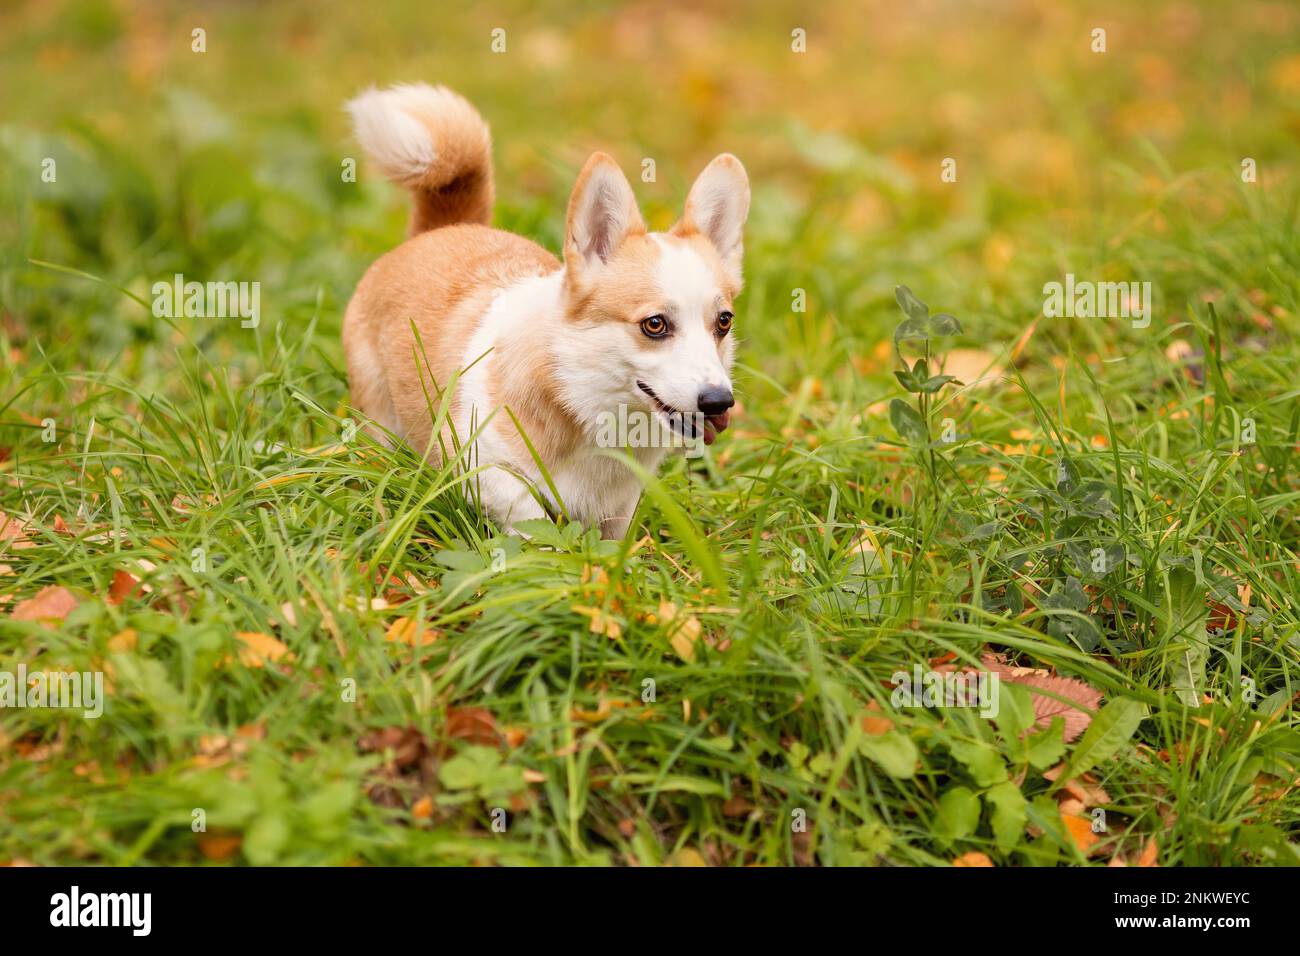 Drôle de chien gallois corgi pembroke ressemble à un renard marchant sur l'herbe Banque D'Images